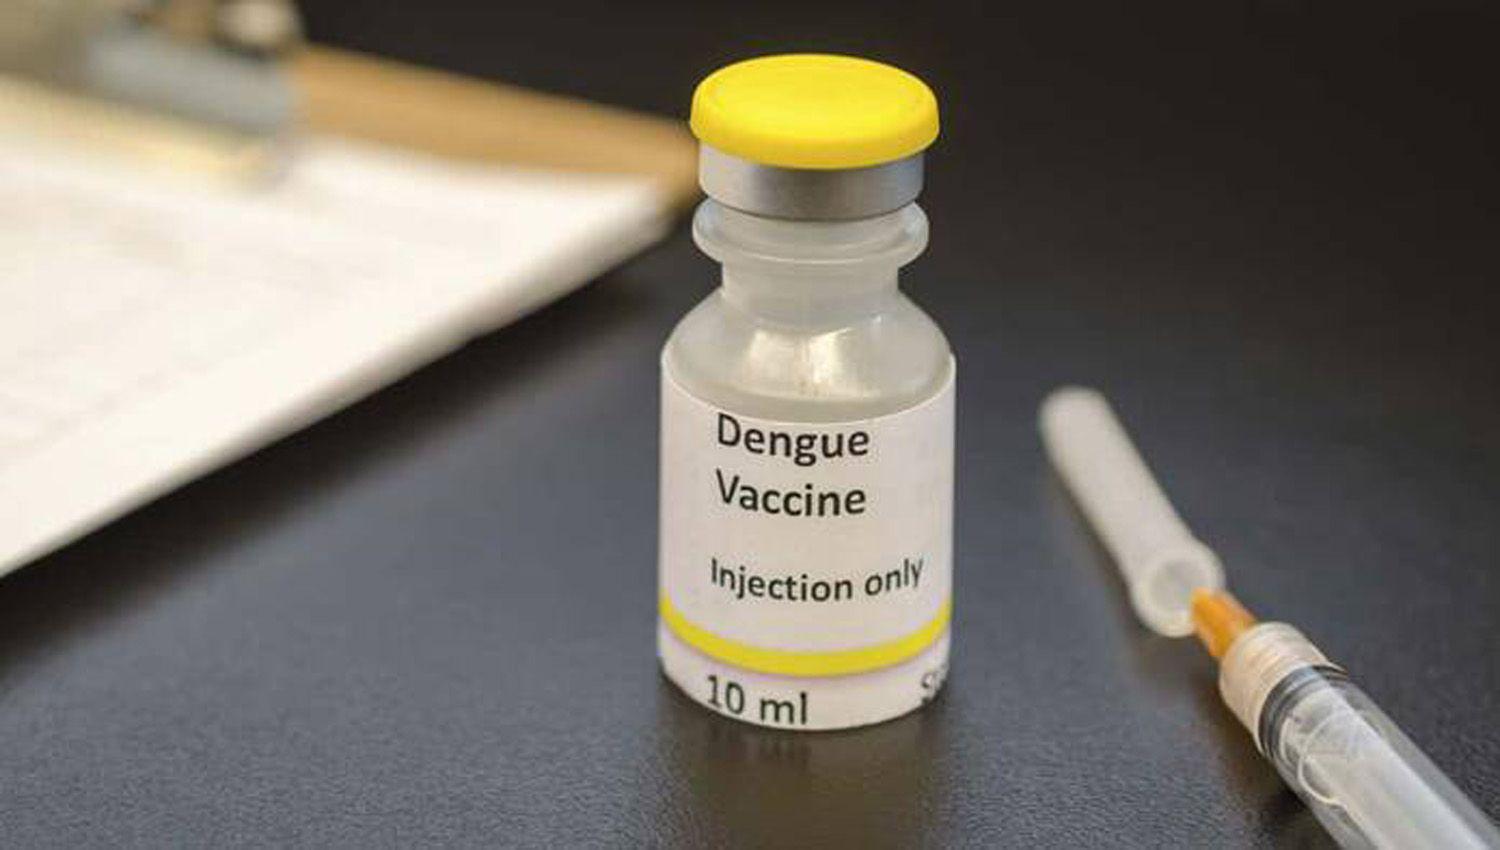 La Anmat dio el visto bueno a la vacuna contra el dengue para que se aplique en nuestro paiacutes